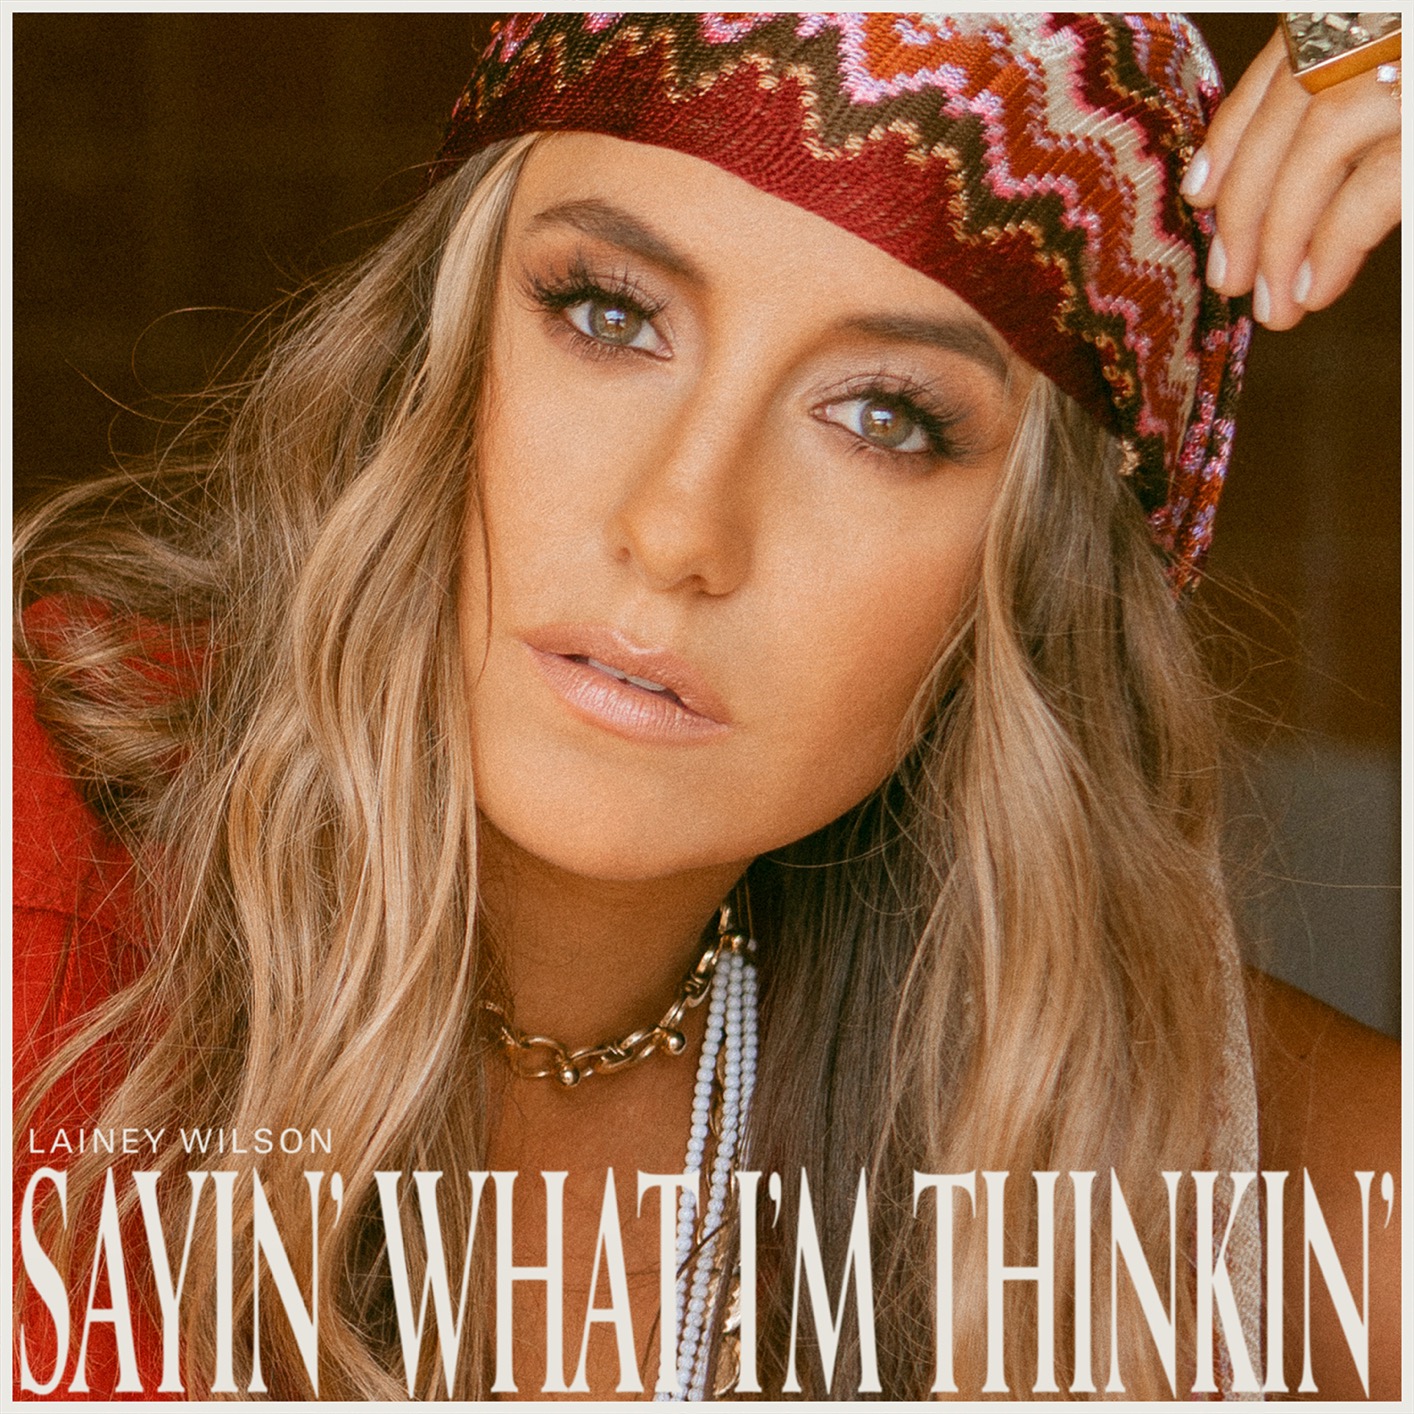 Lainey Wilson - Sayin’ What I’m Thinkin’ (2021) [FLAC 24bit/96kHz]